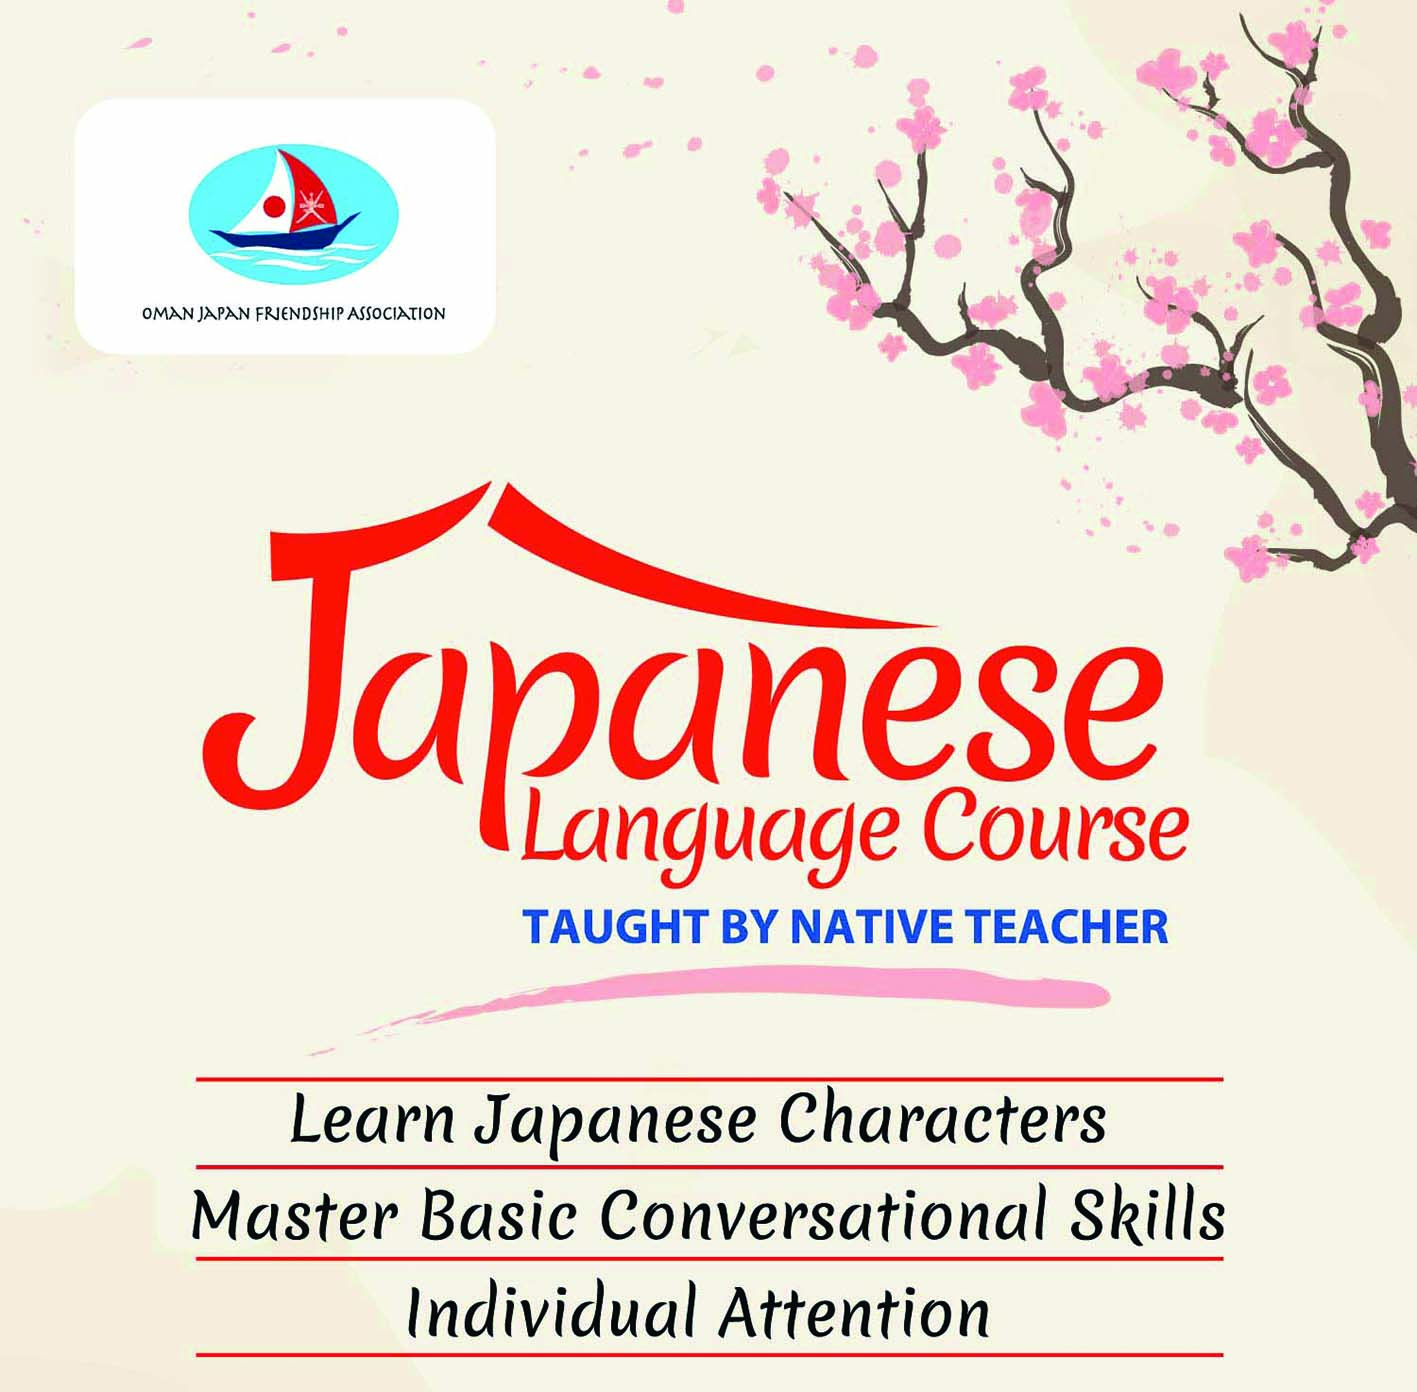 جمعية الصداقة العُمانية اليابانية تعلن عن موعد الدورة الجديدة لتعليم اللغة اليابانية